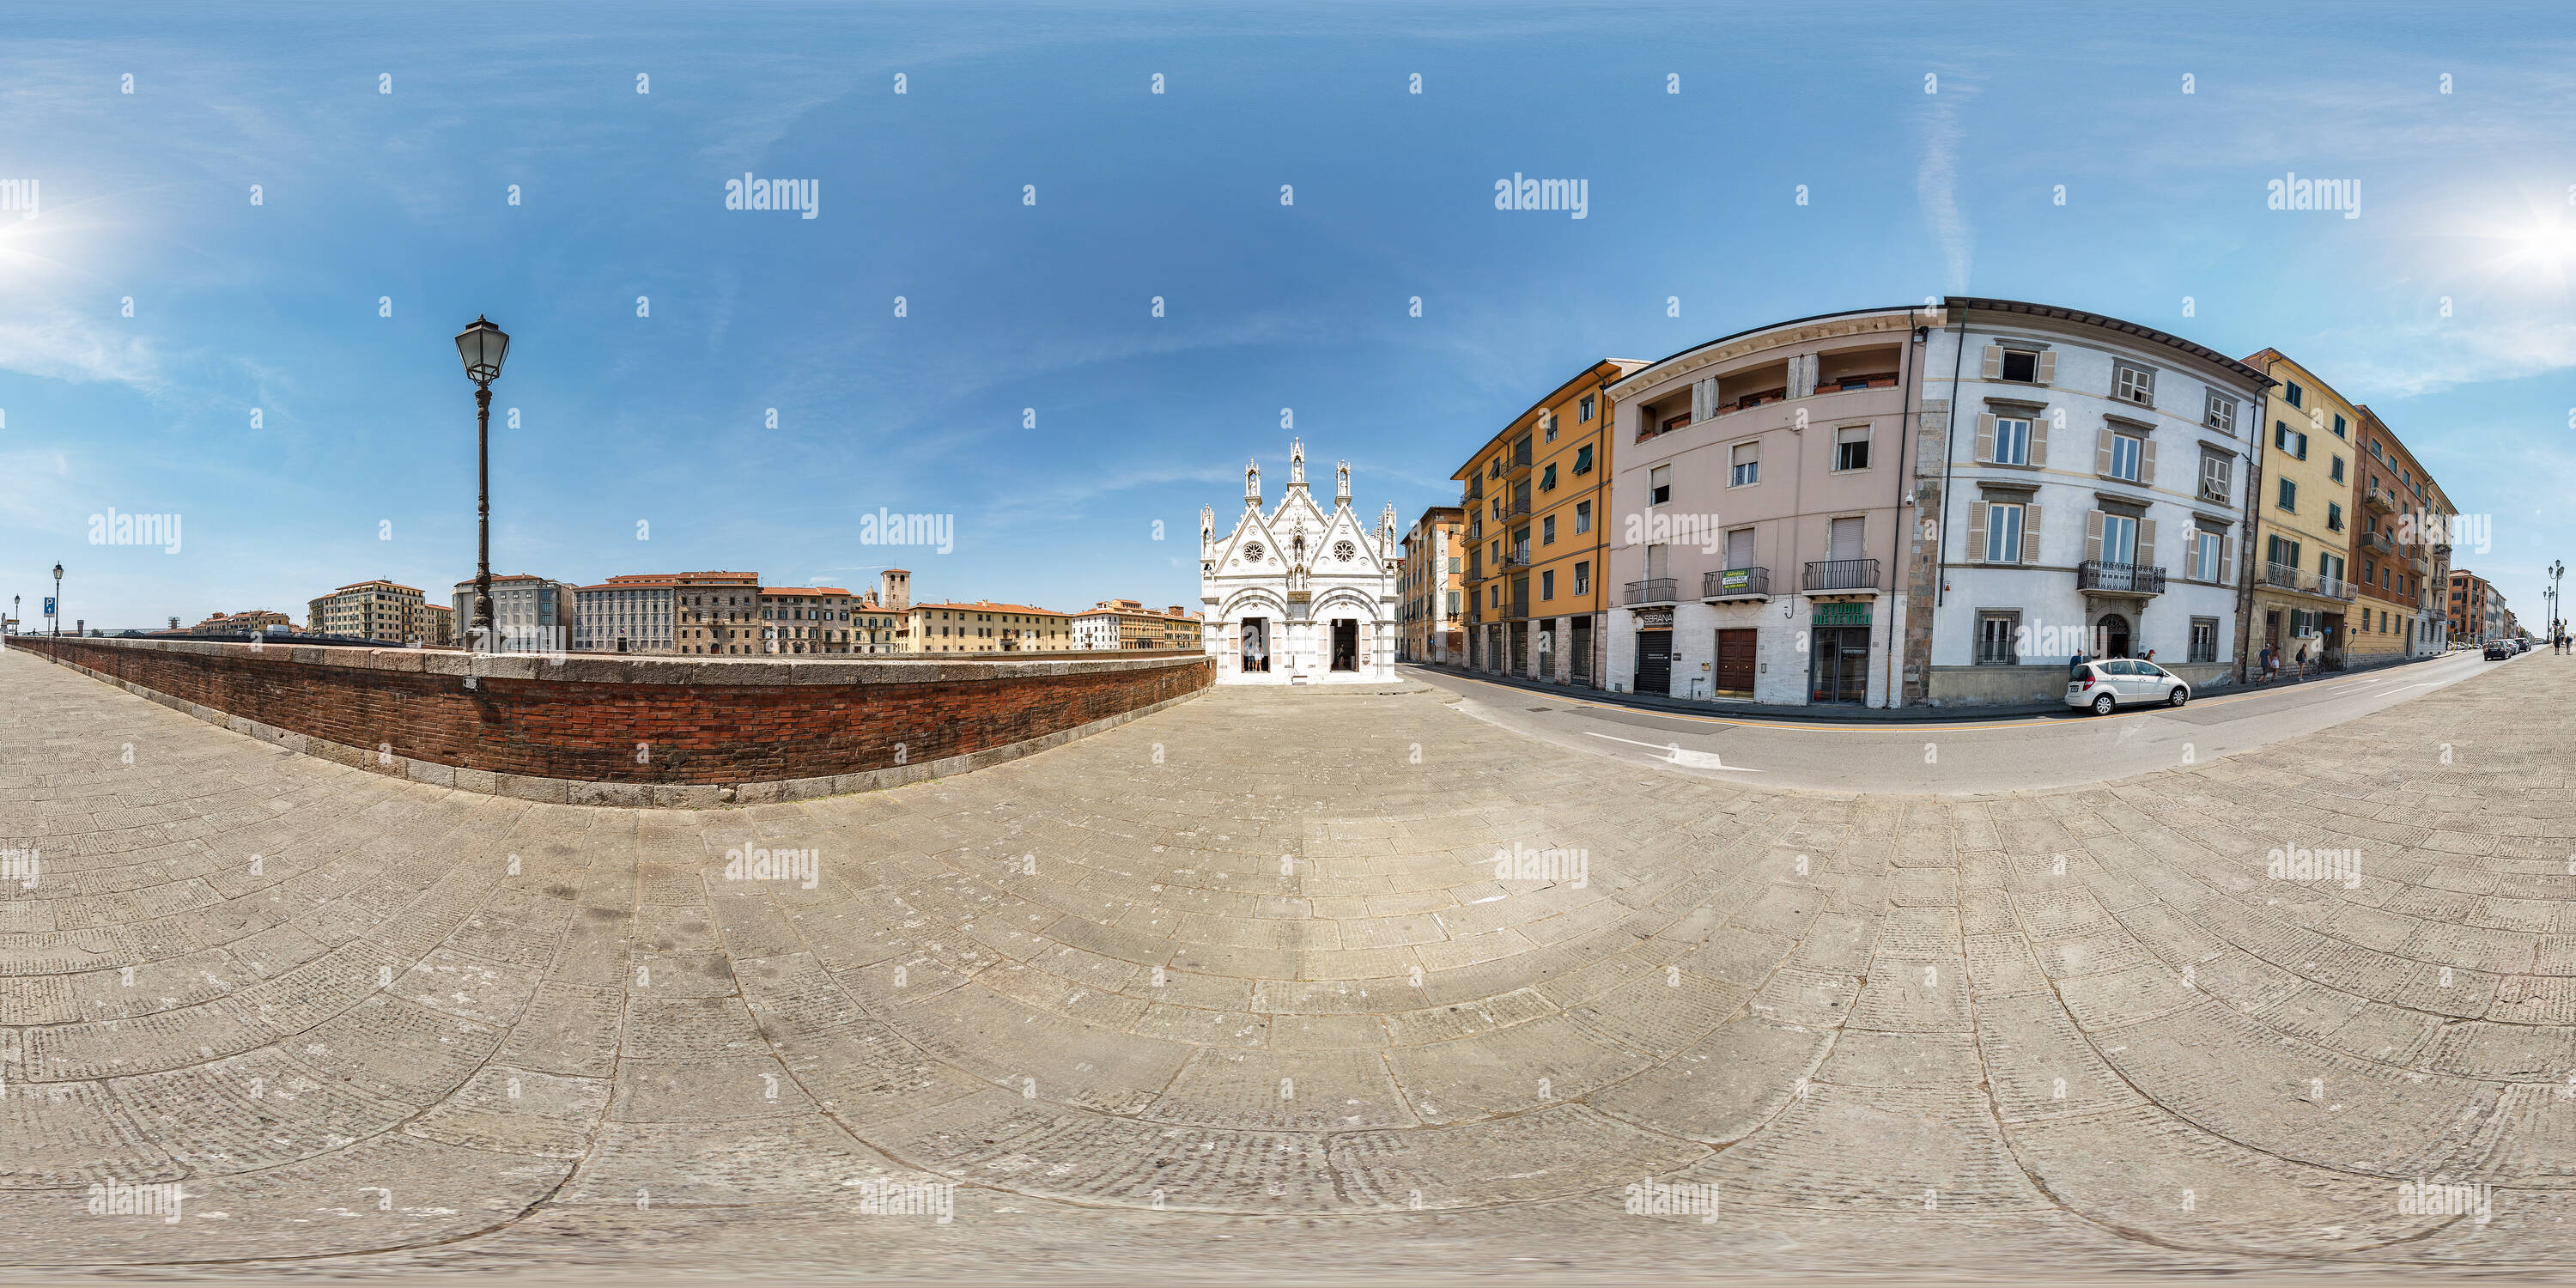 Vue panoramique à 360° de Santa Maria della Spina. Pise.